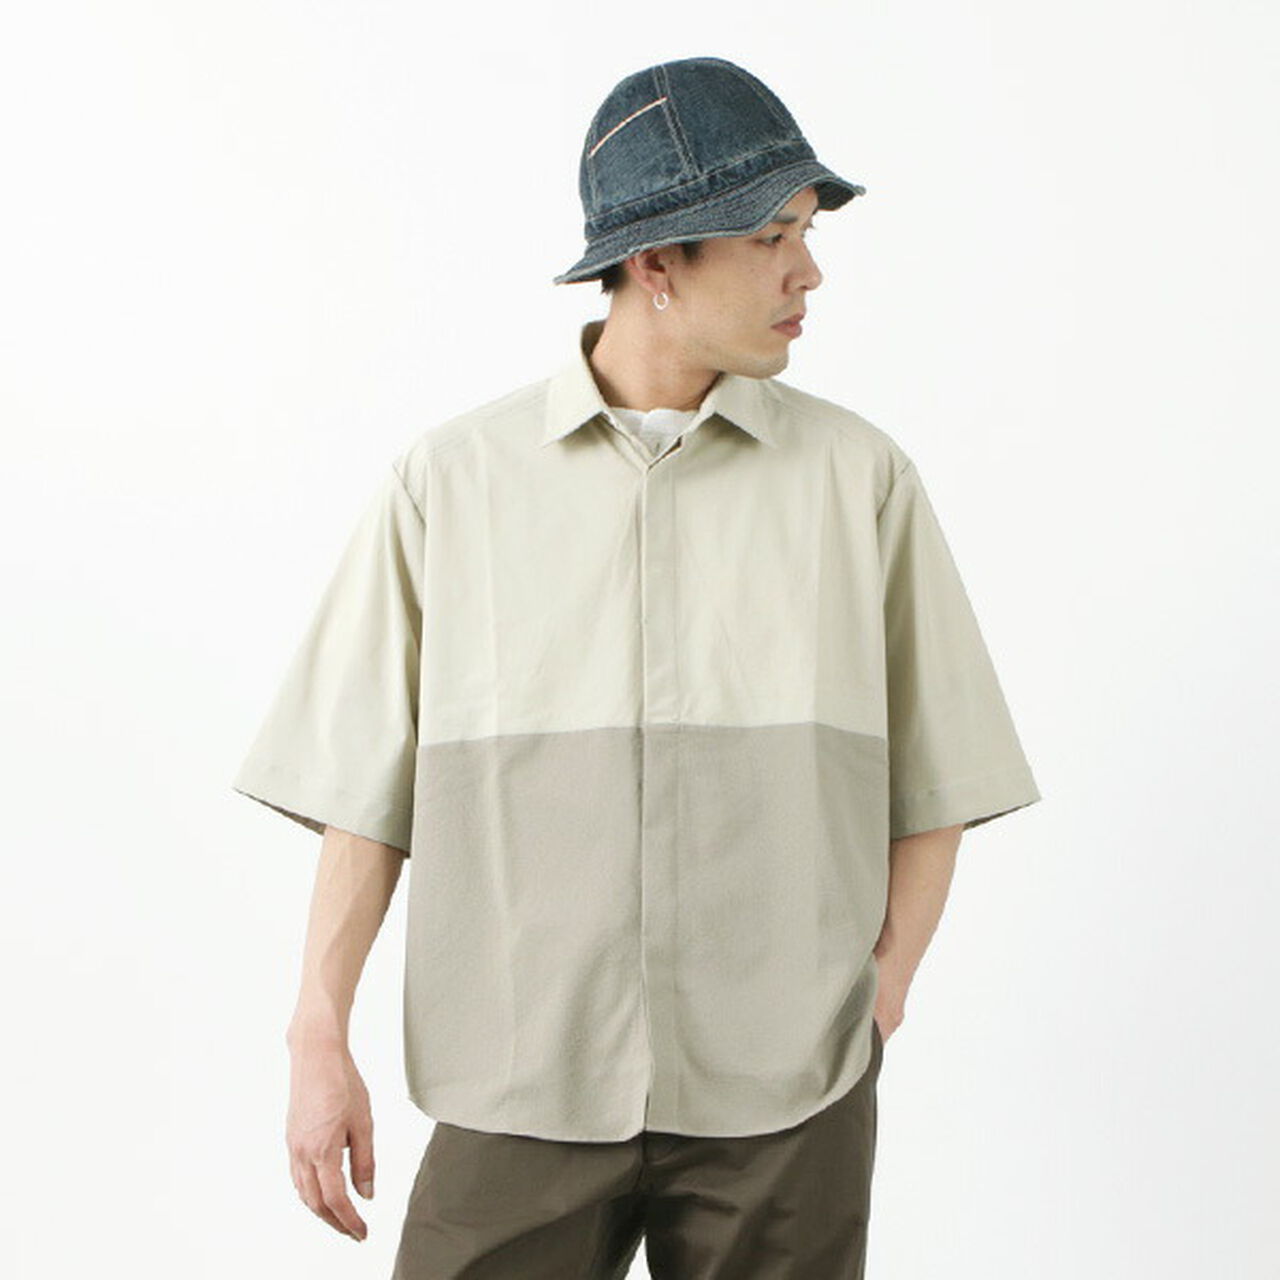 Ice x Dry Short Sleeve Shirt,Beige, large image number 0